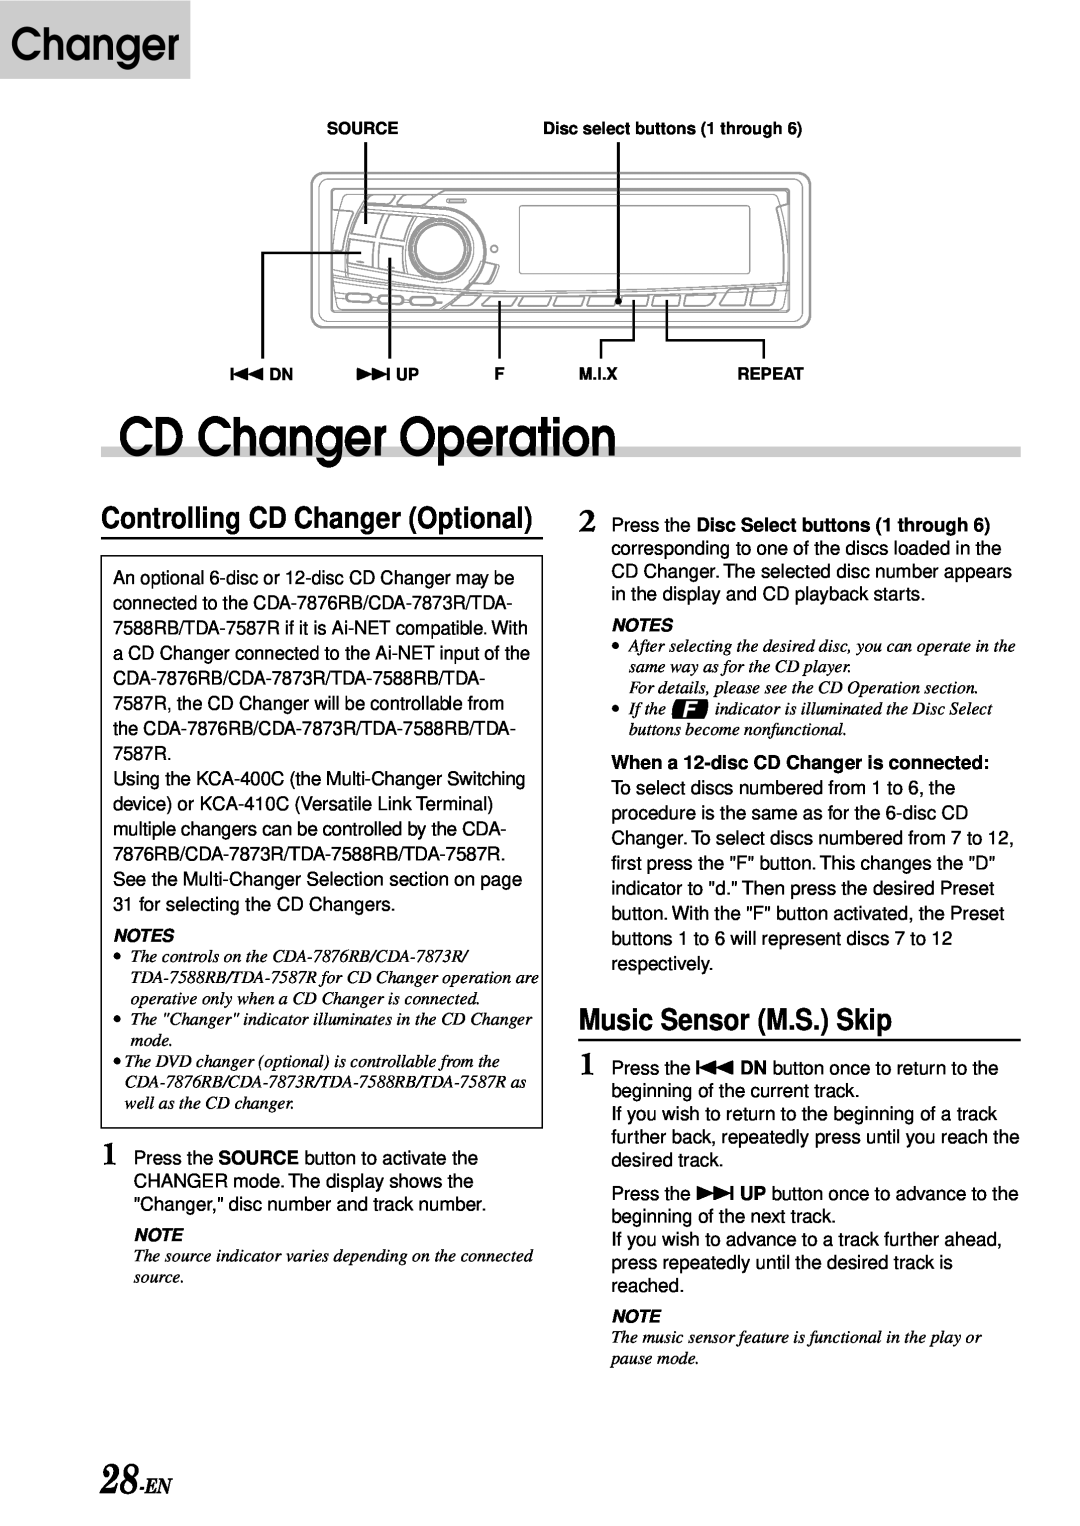 Alpine TDA-7588RB, CDA-7876RB CD Changer Operation, Music Sensor M.S. Skip, 28-EN, Controlling CD Changer Optional 